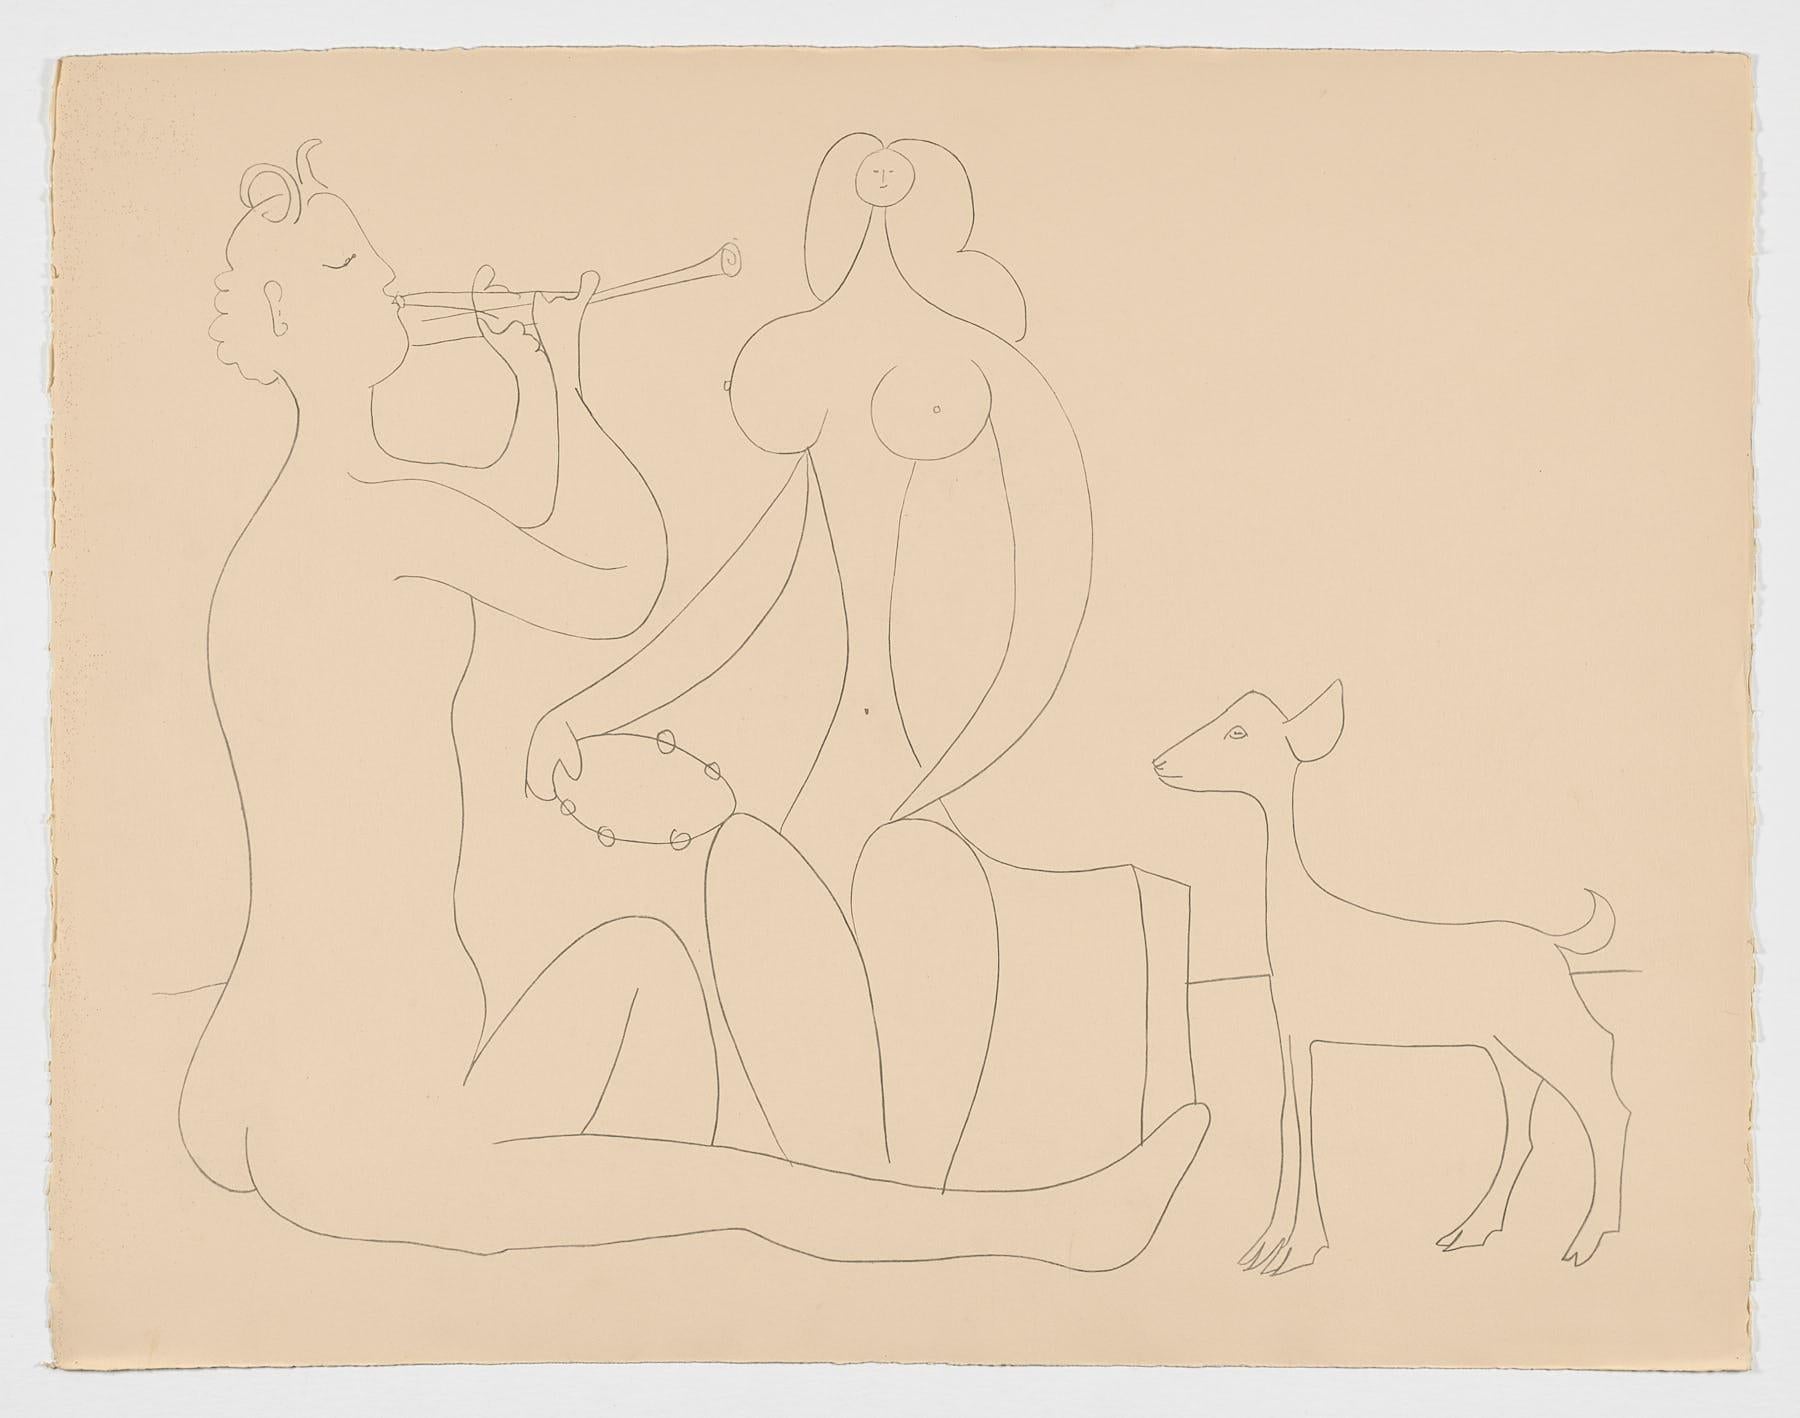 Spanischer Original-Kunstdruck in limitierter Auflage von Pablo Ruiz Picasso, 1958, n16 – Print von Pablo Picasso